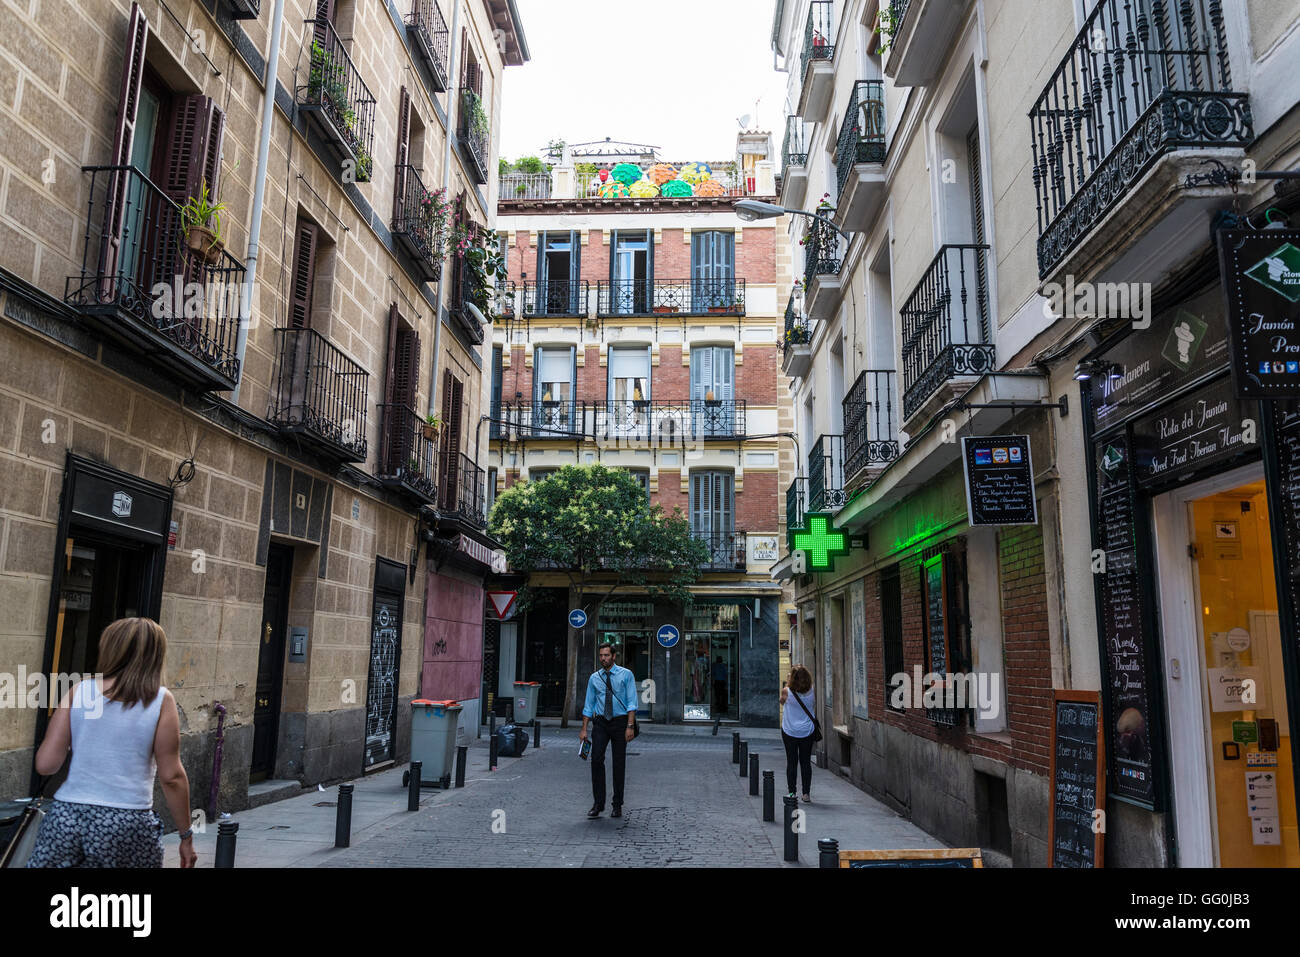 Calle Lope de Vega, la rue piétonne, dans le quartier de las Huertas, Madrid, Espagne Banque D'Images